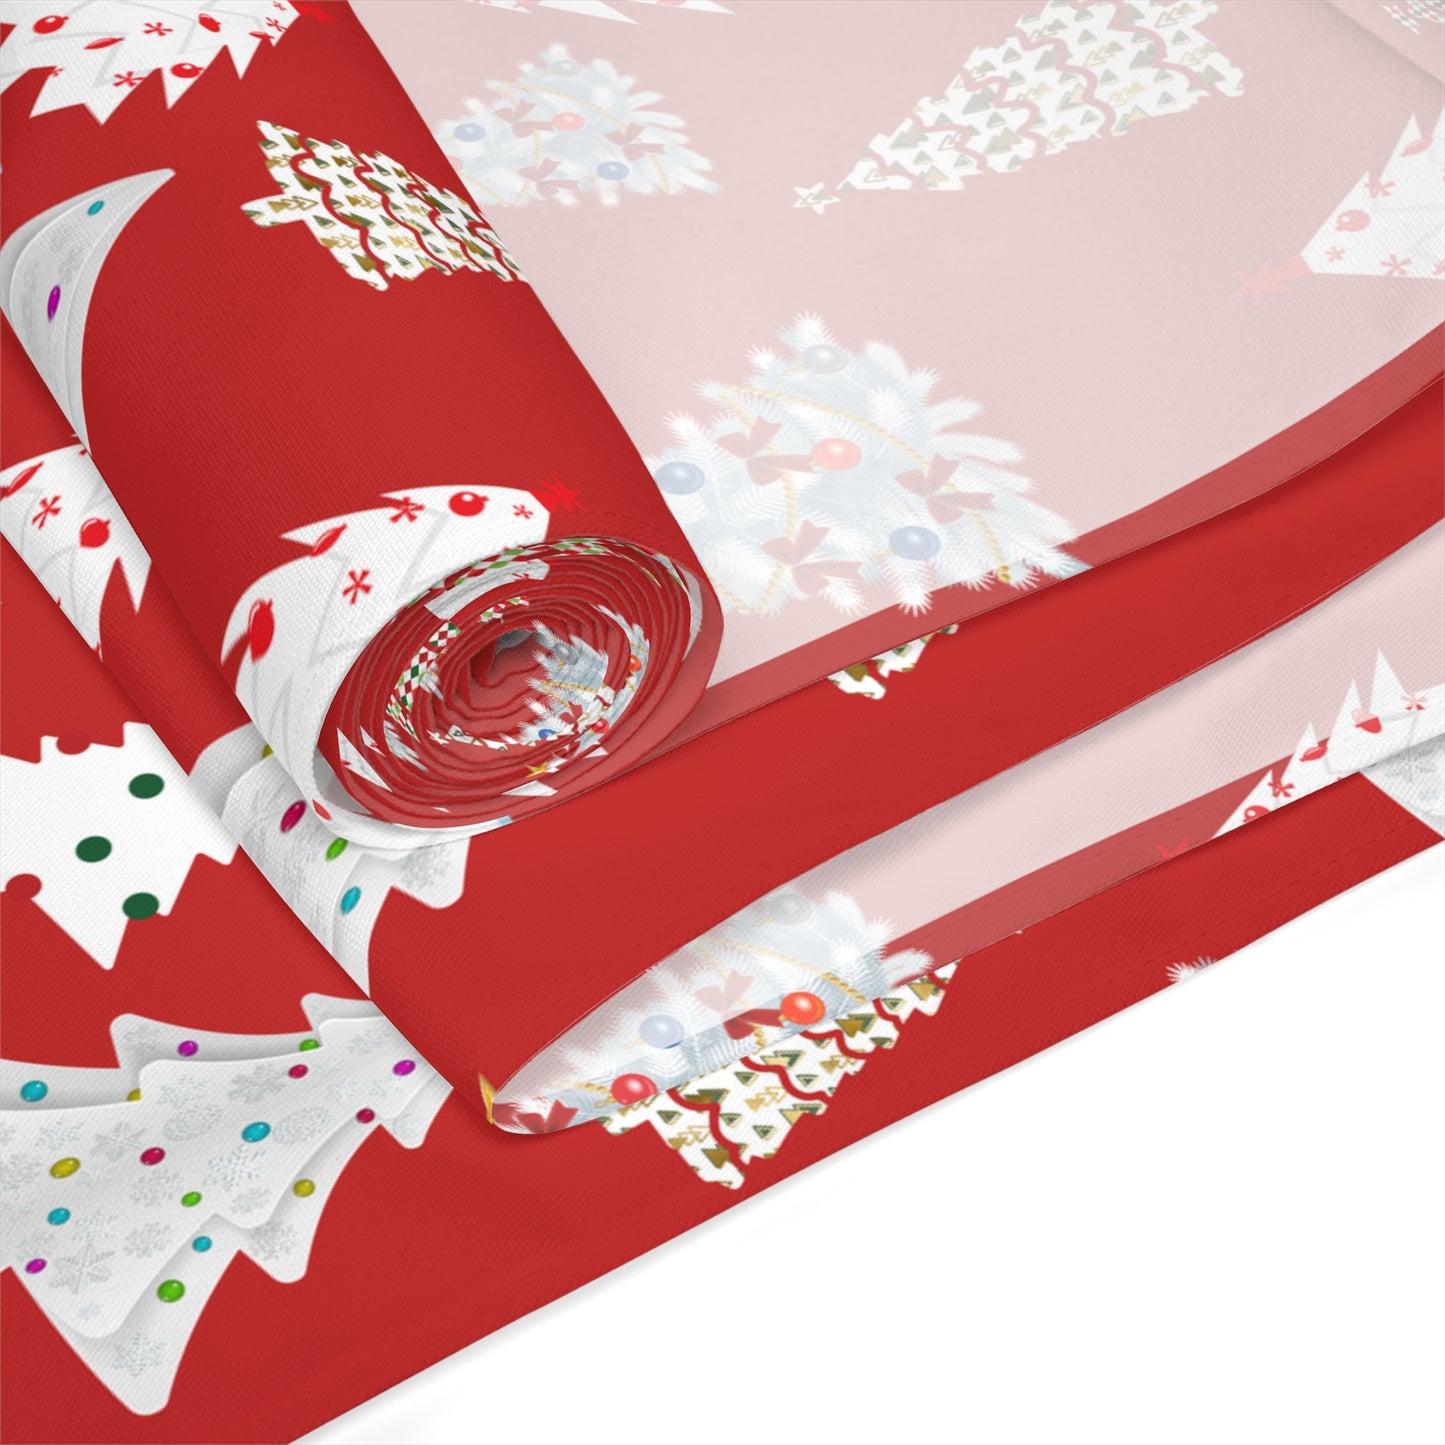 Red Christmas Table Runner / Christmas Tree Print Runner